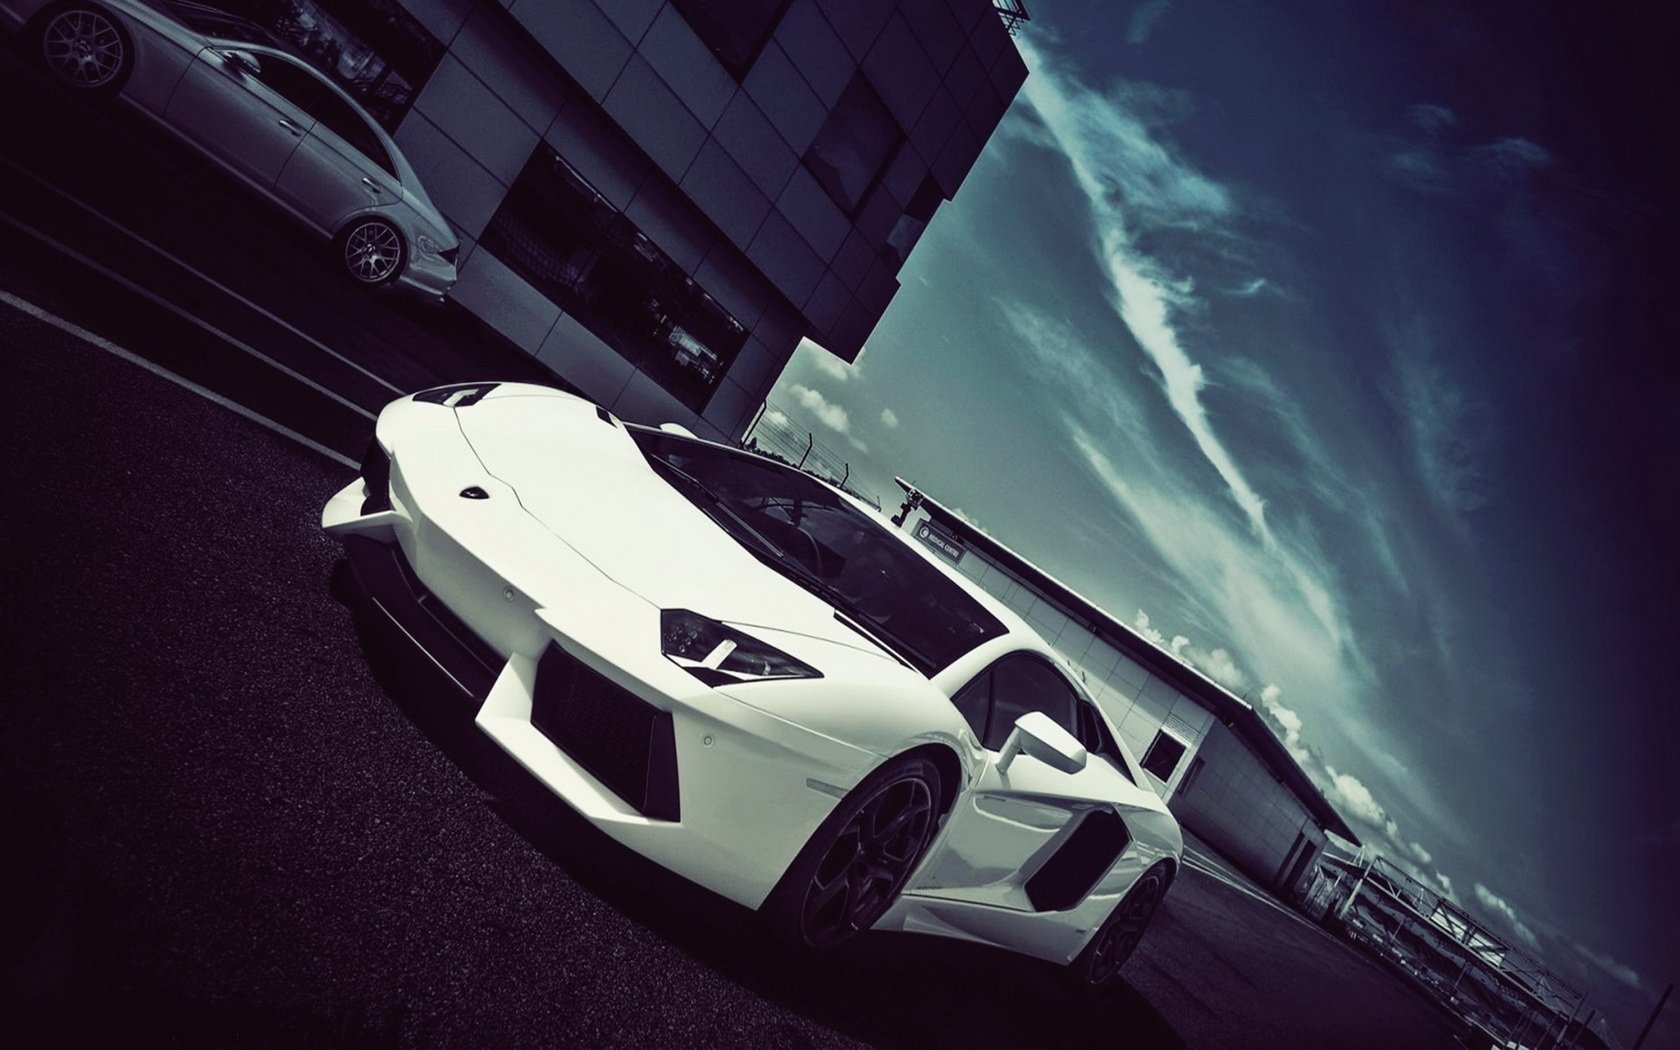 Chiếc Lamborghini Aventador đầy quyến rũ với vẻ ngoài đầy mạnh mẽ và sức mạnh vô cùng ấn tượng. Chúng ta hãy tận hưởng thêm những hình ảnh mới nhất về Aventador để cảm nhận được niềm đam mê của những chiếc siêu xe này.